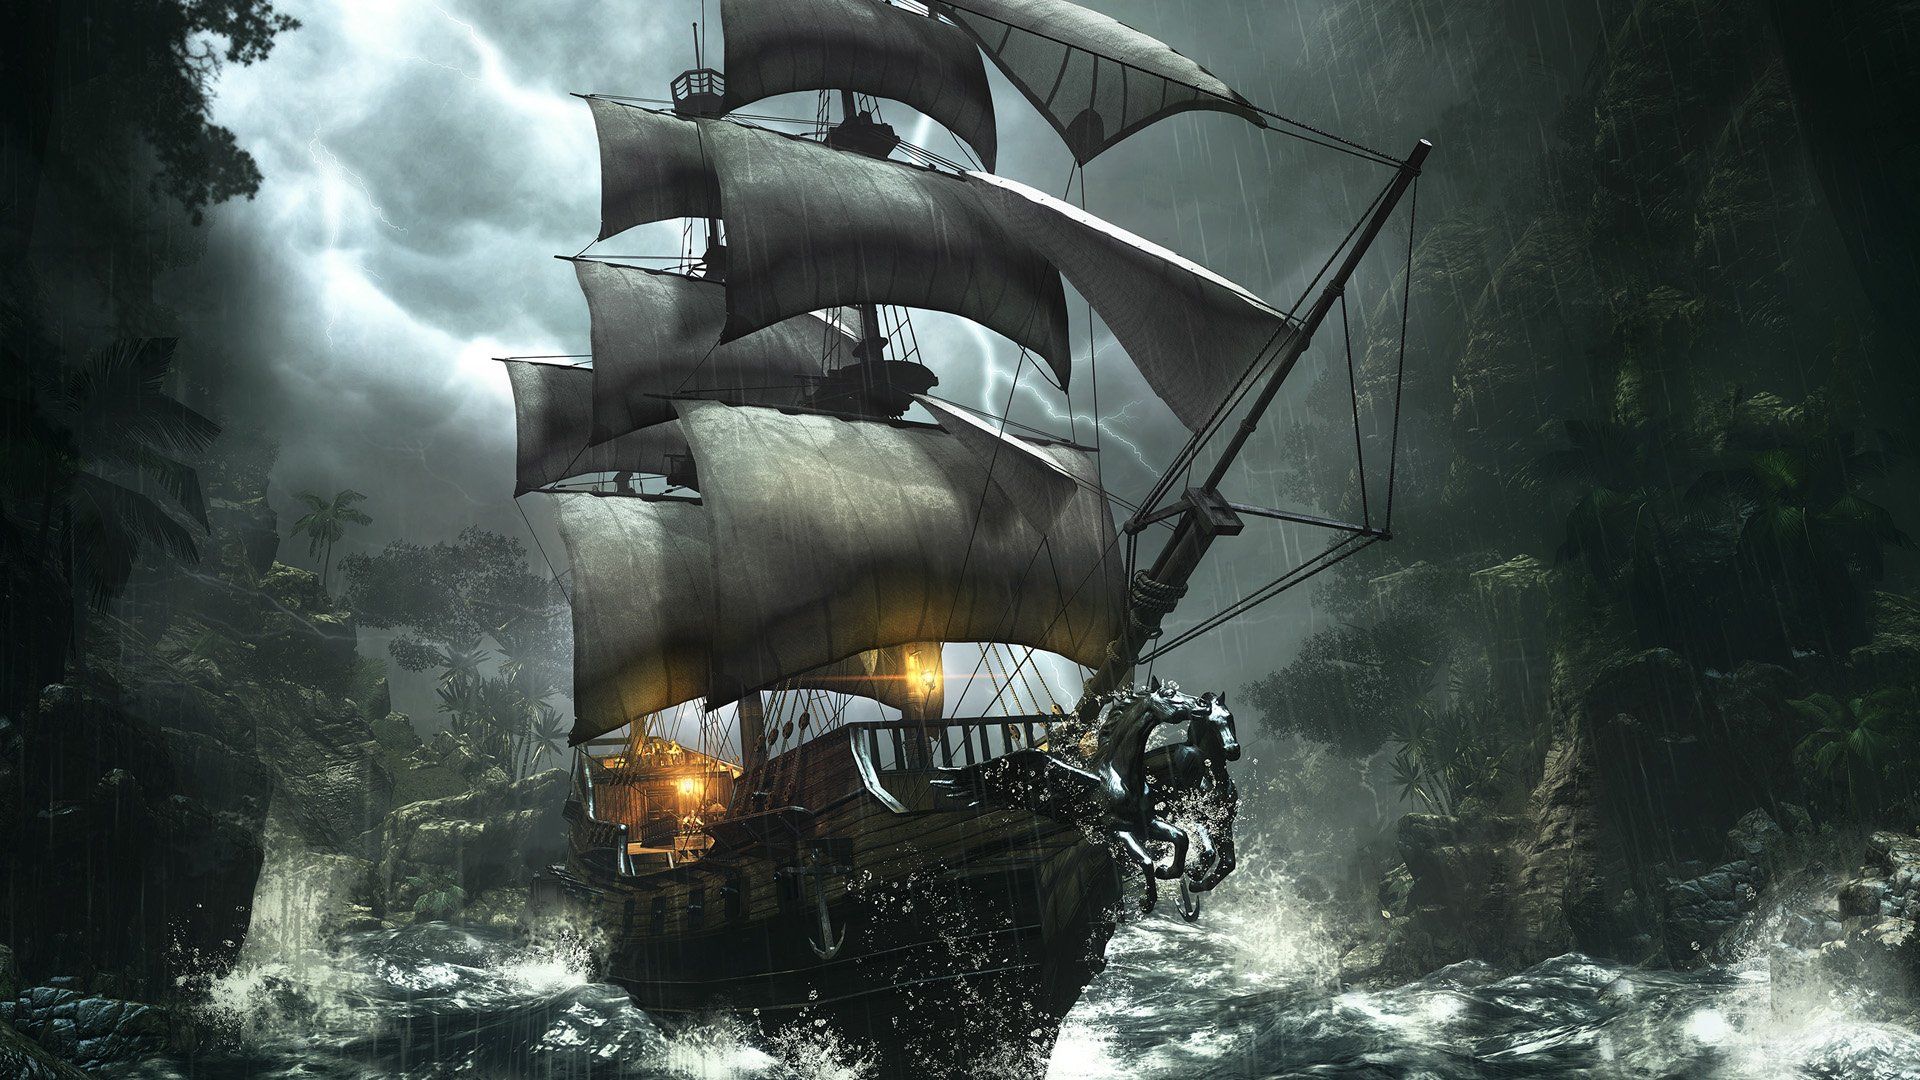 schwarze perle schiff hd wallpaper,segelschiff,erstklassig,fahrzeug,galeone,schiff